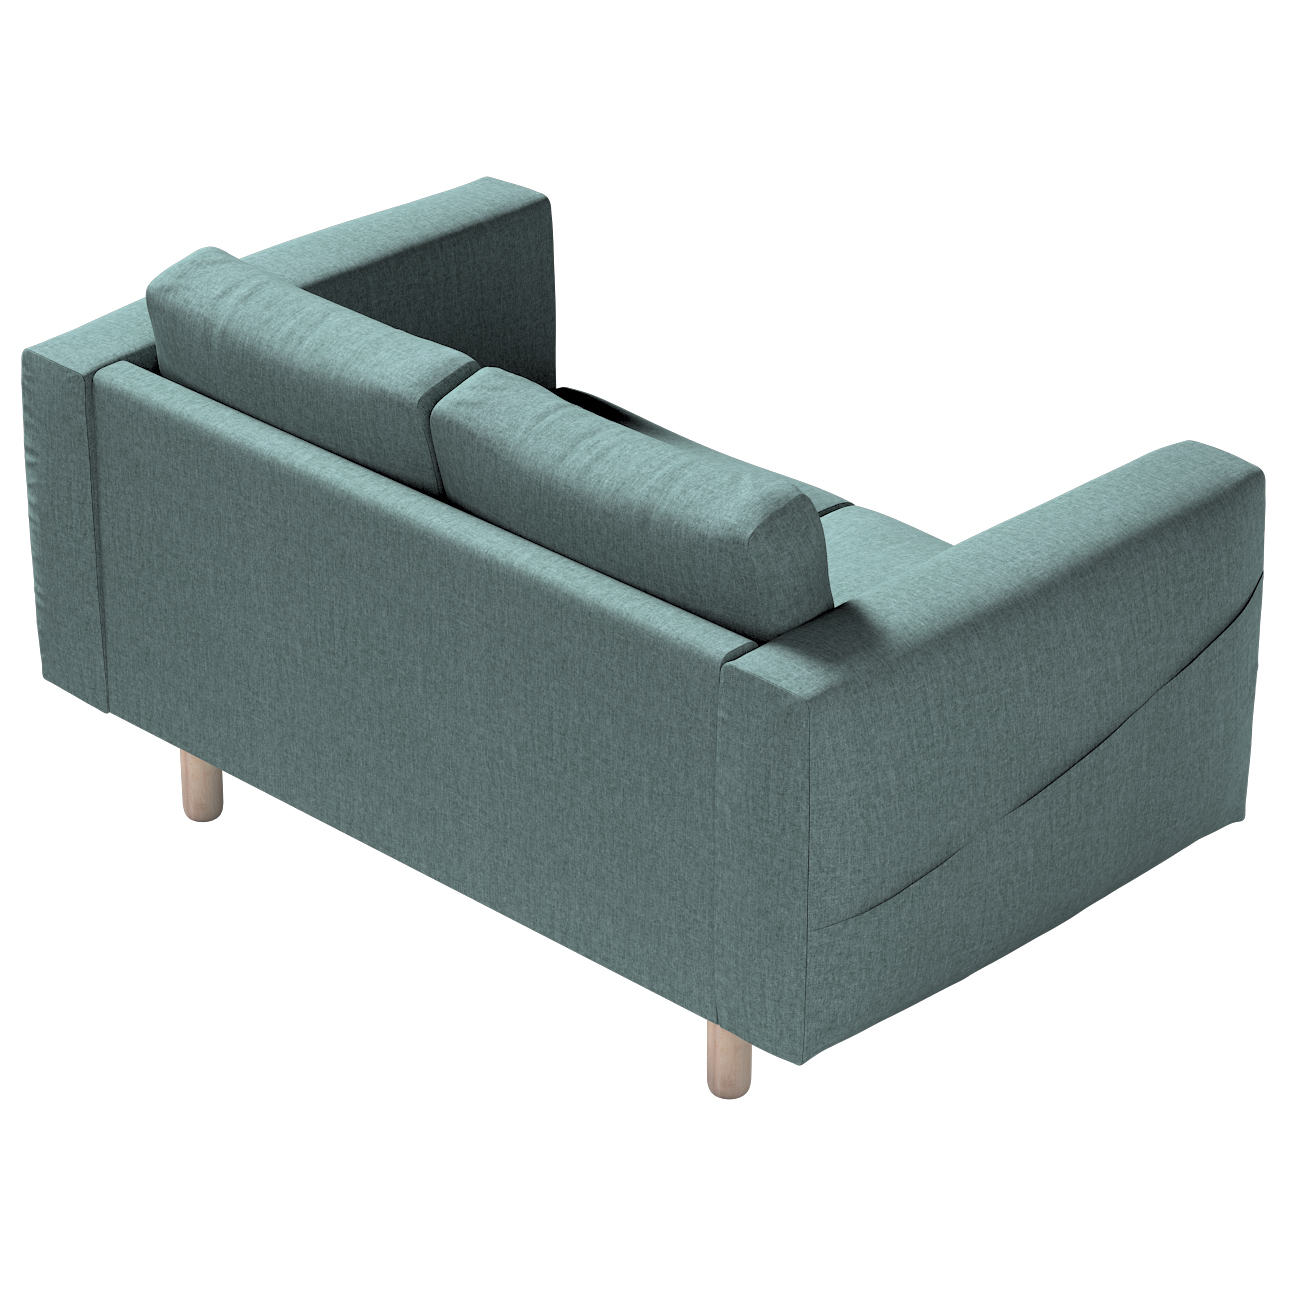 Bezug für Norsborg 2-Sitzer Sofa, grau- blau, Norsborg 2-Sitzer Sofabezug, günstig online kaufen